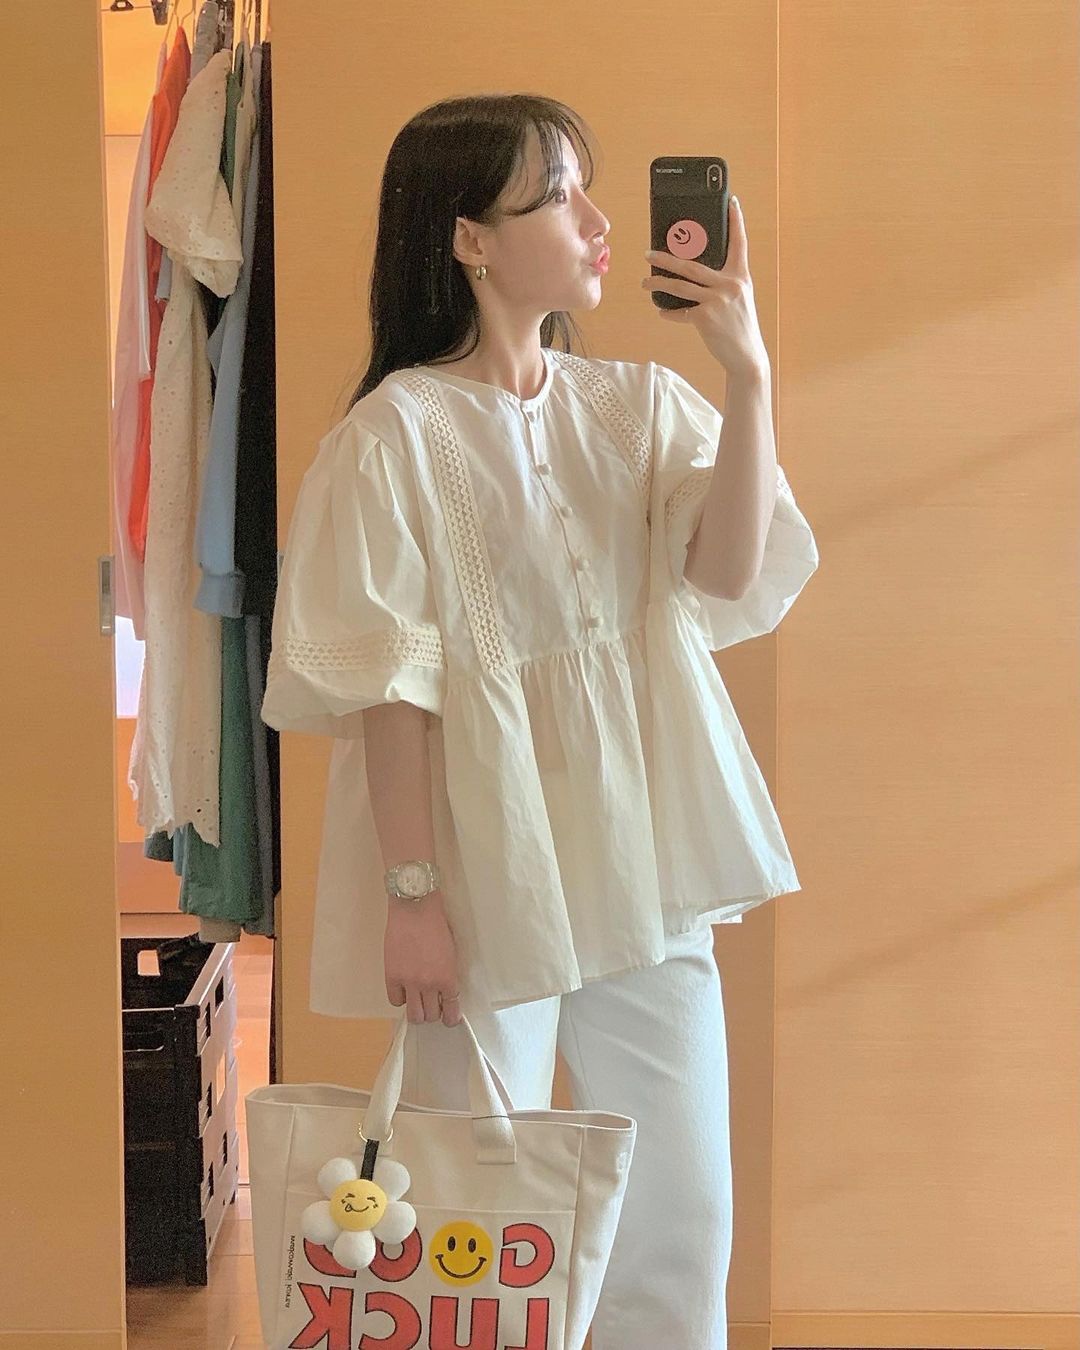 Có 1 mẫu áo mà dàn gái Hàn đang nâng như nâng trứng, diện lên đảm bảo có ảnh đẹp post Instagram sống ảo! - Ảnh 5.